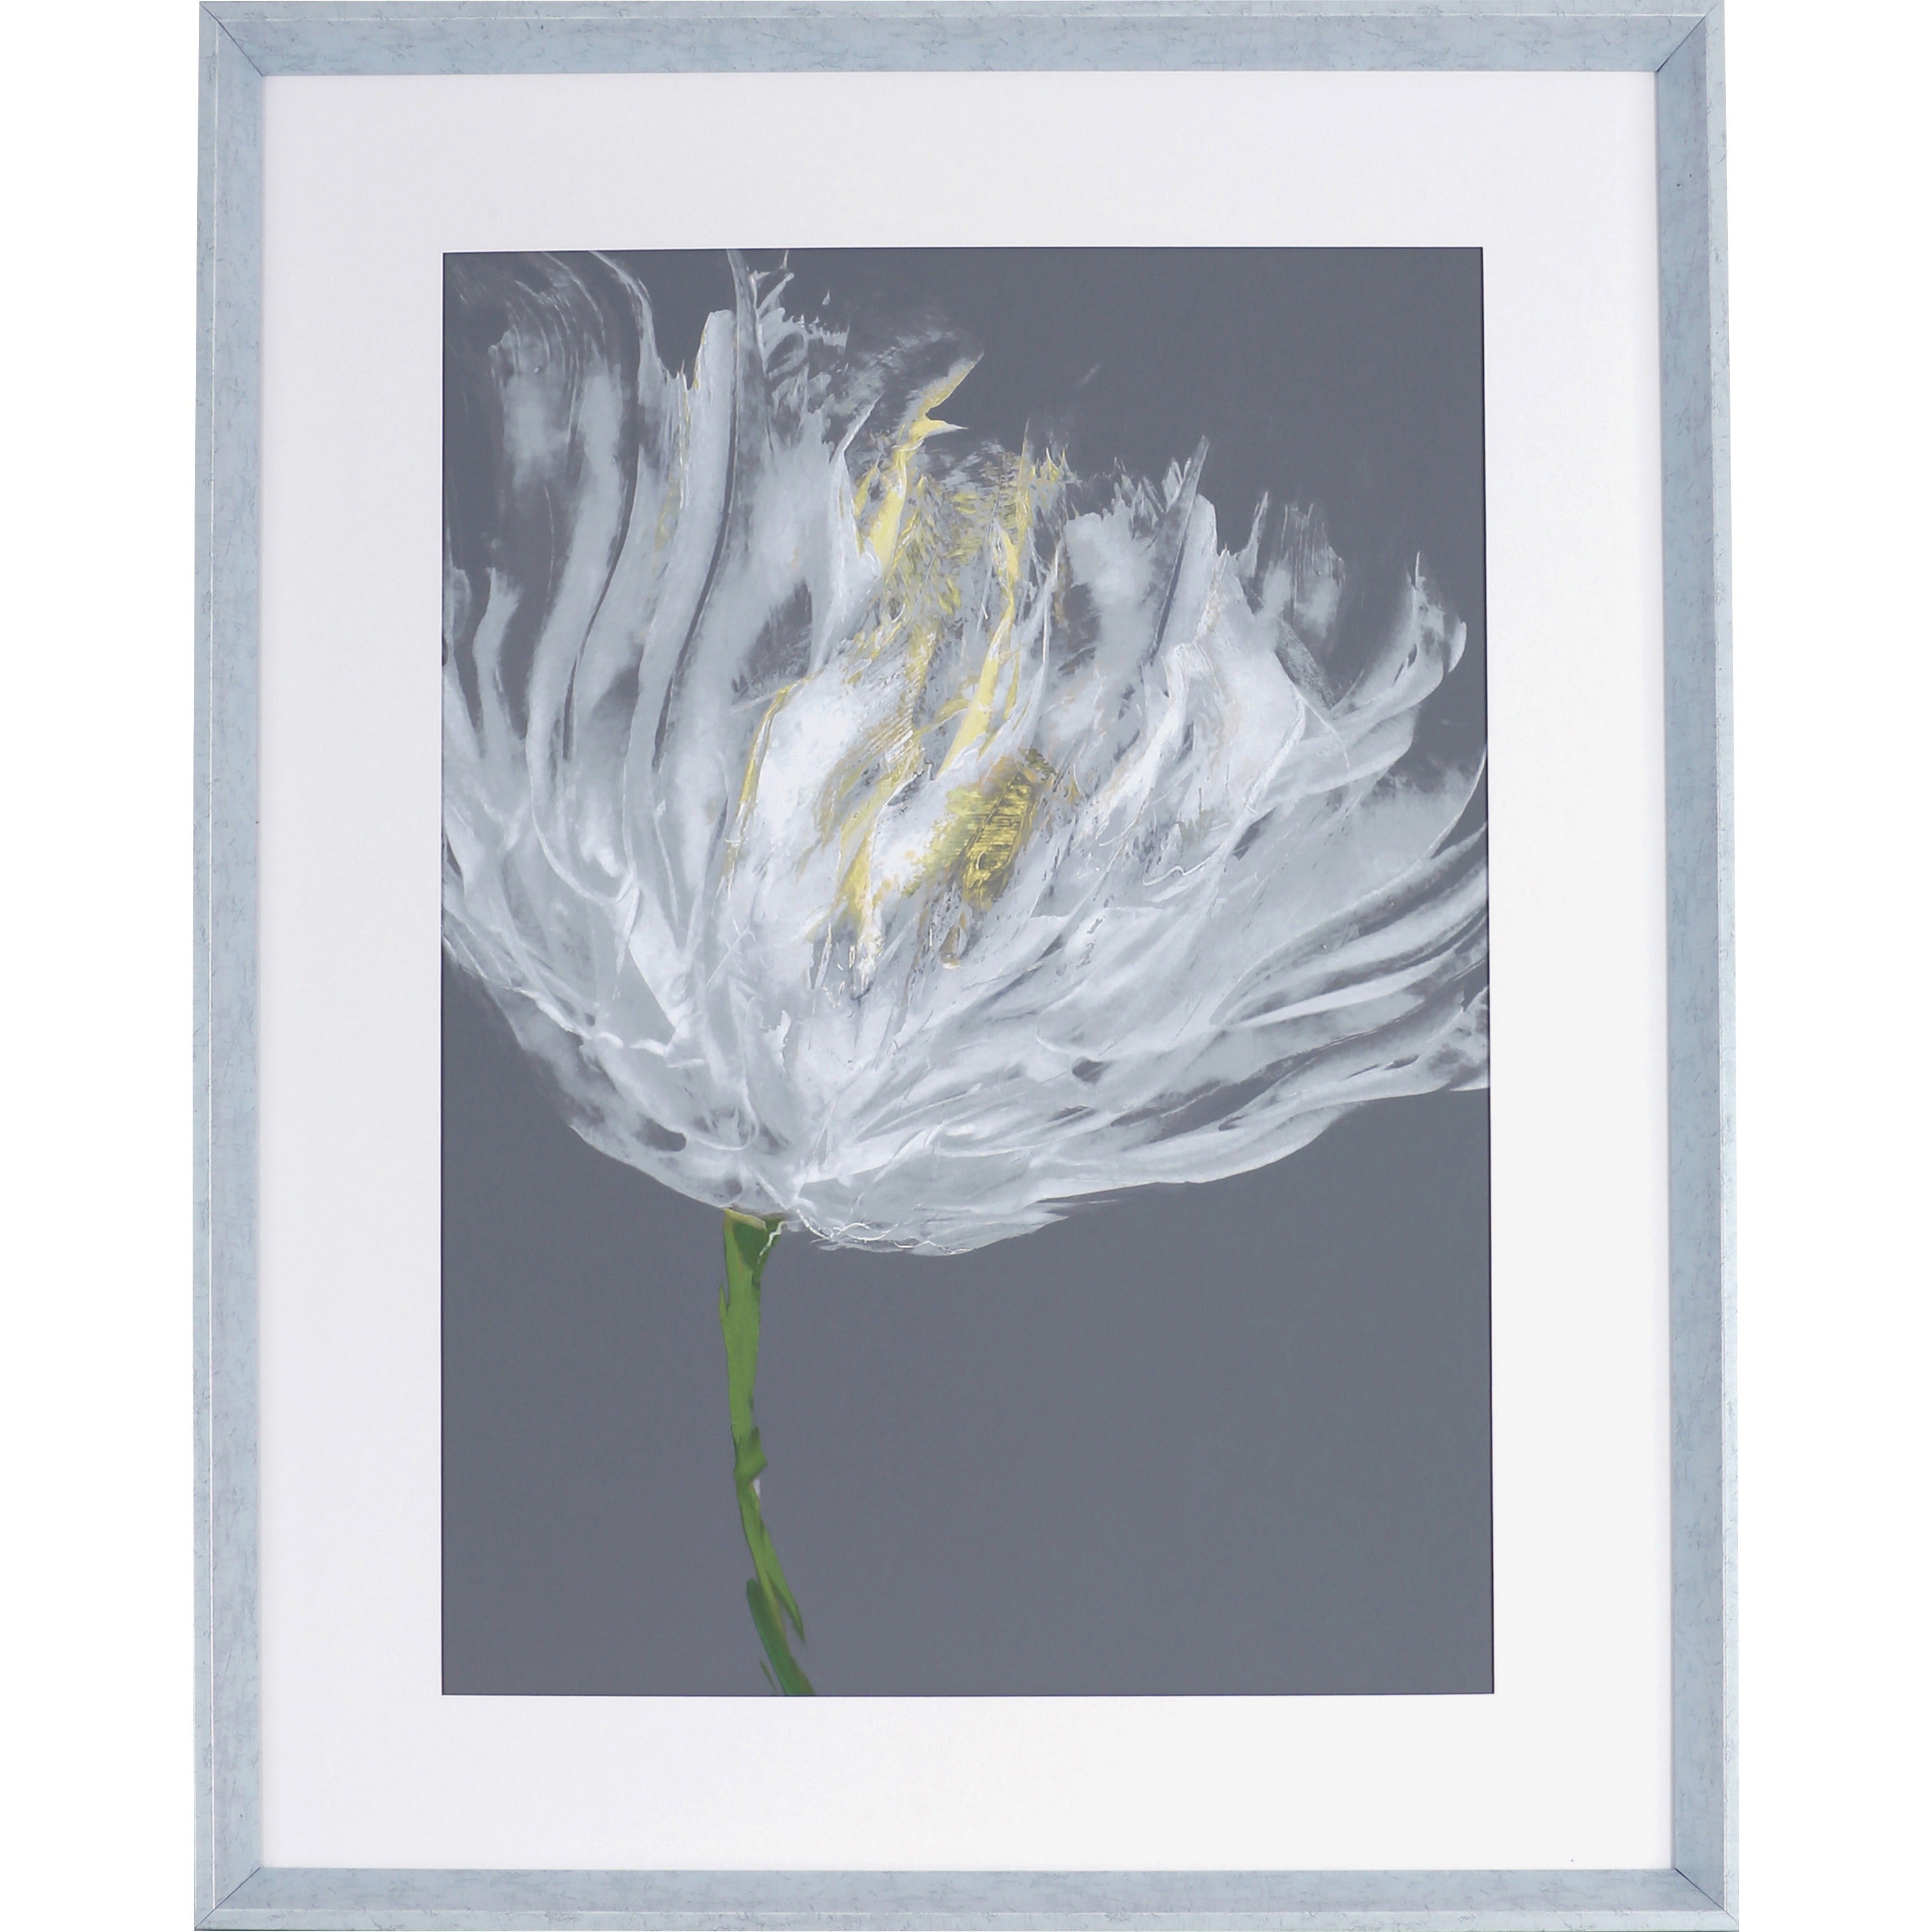 Lorell White Flower I Framed Abstract Art - 27.50" x 35.50" Frame Size - 1 Each - Gray, White